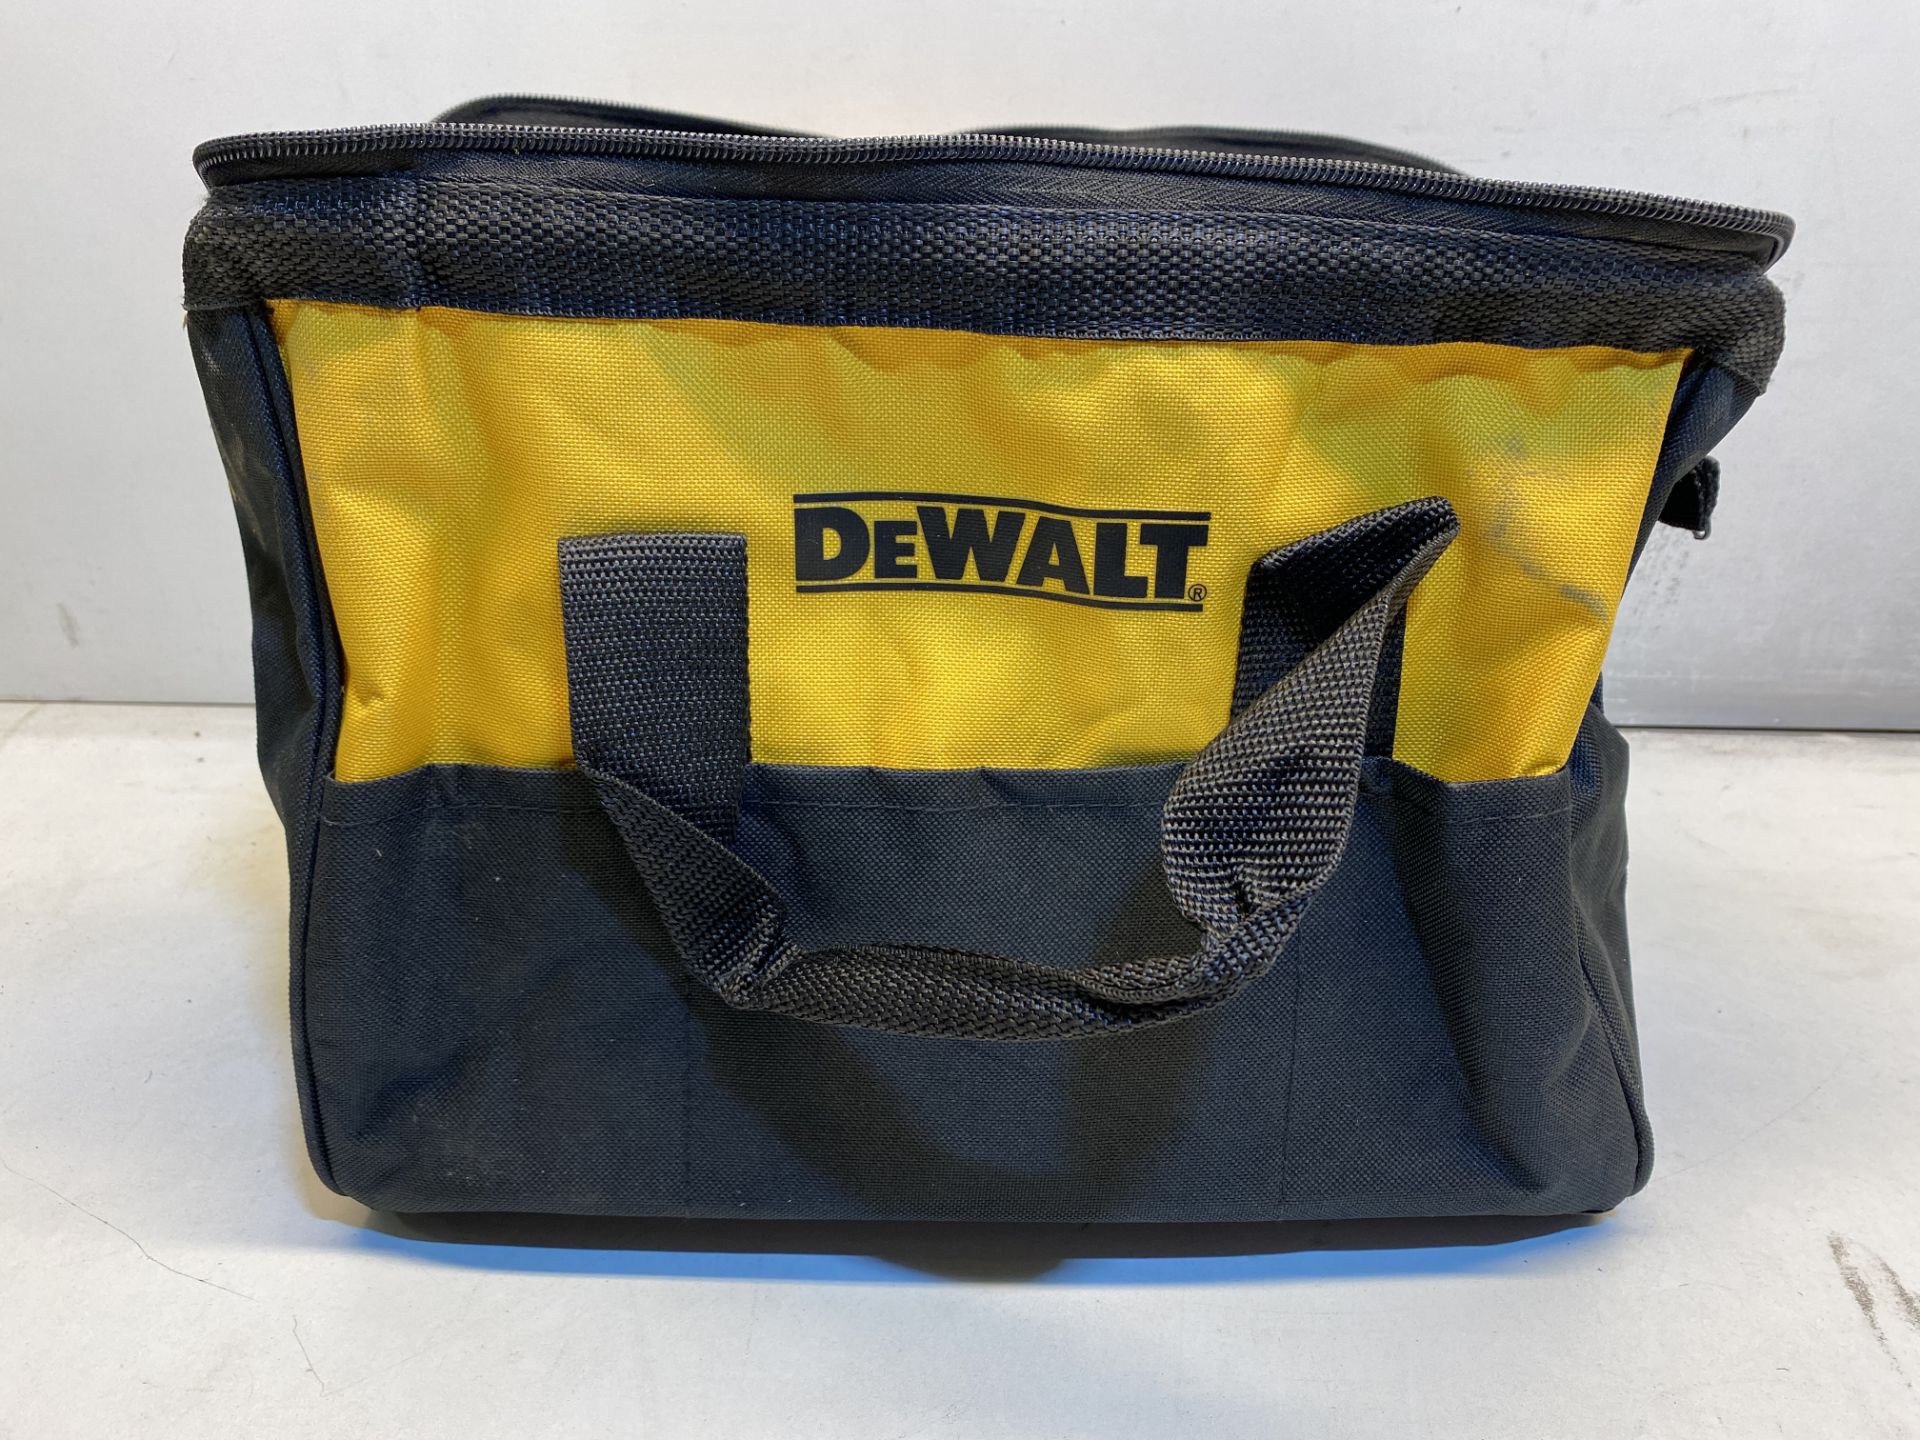 4 x DeWalt Tool Storage Bags - Image 2 of 3